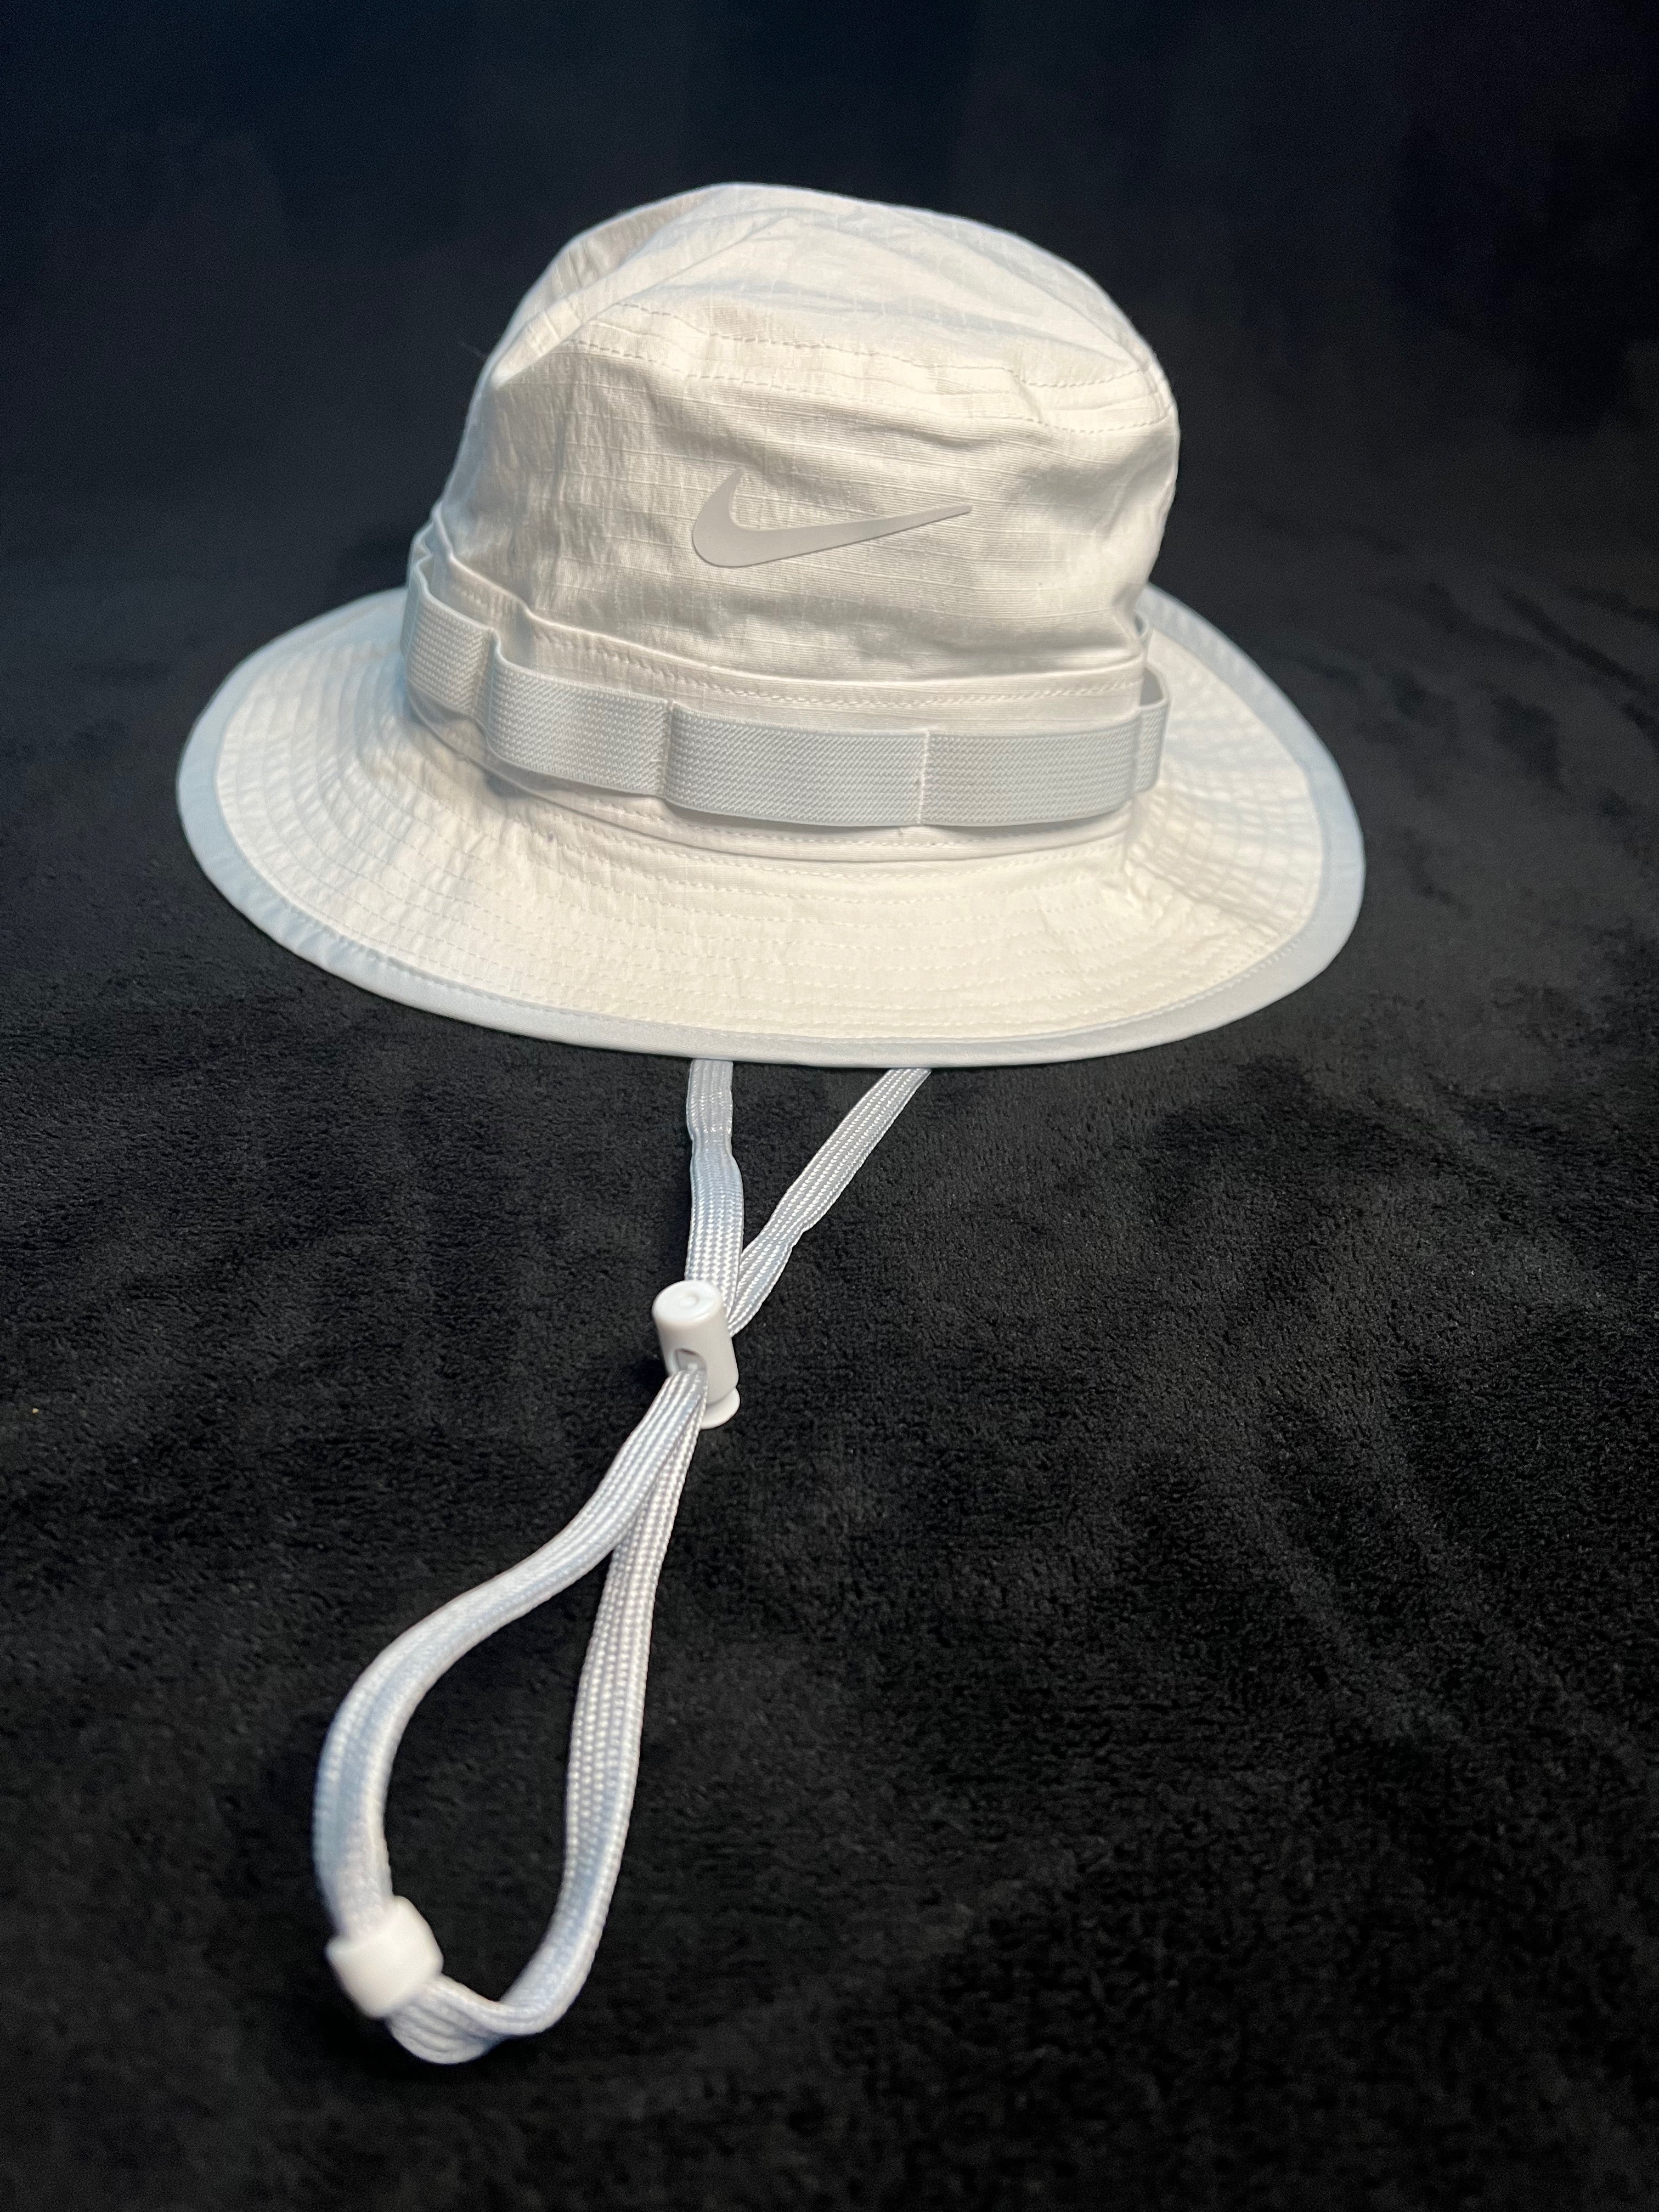 Nike Boonie Bucket Hat - White